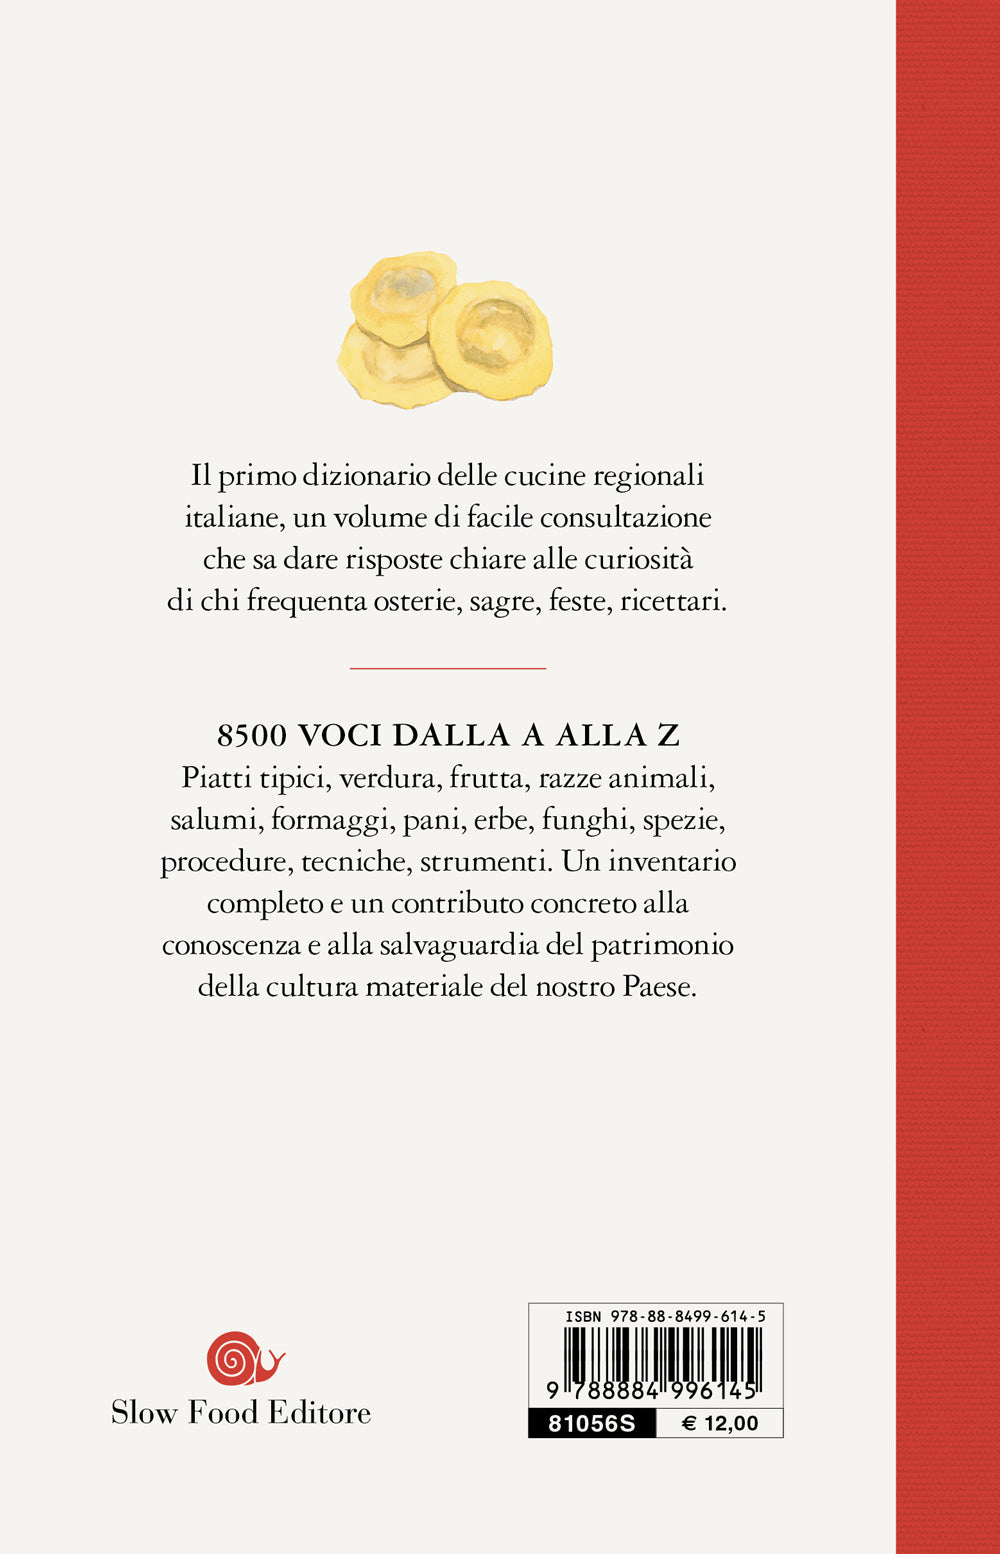 Dizionario delle cucine regionali italiane::Dalla A alla Z la storia del nostro patrimonio gastronomico